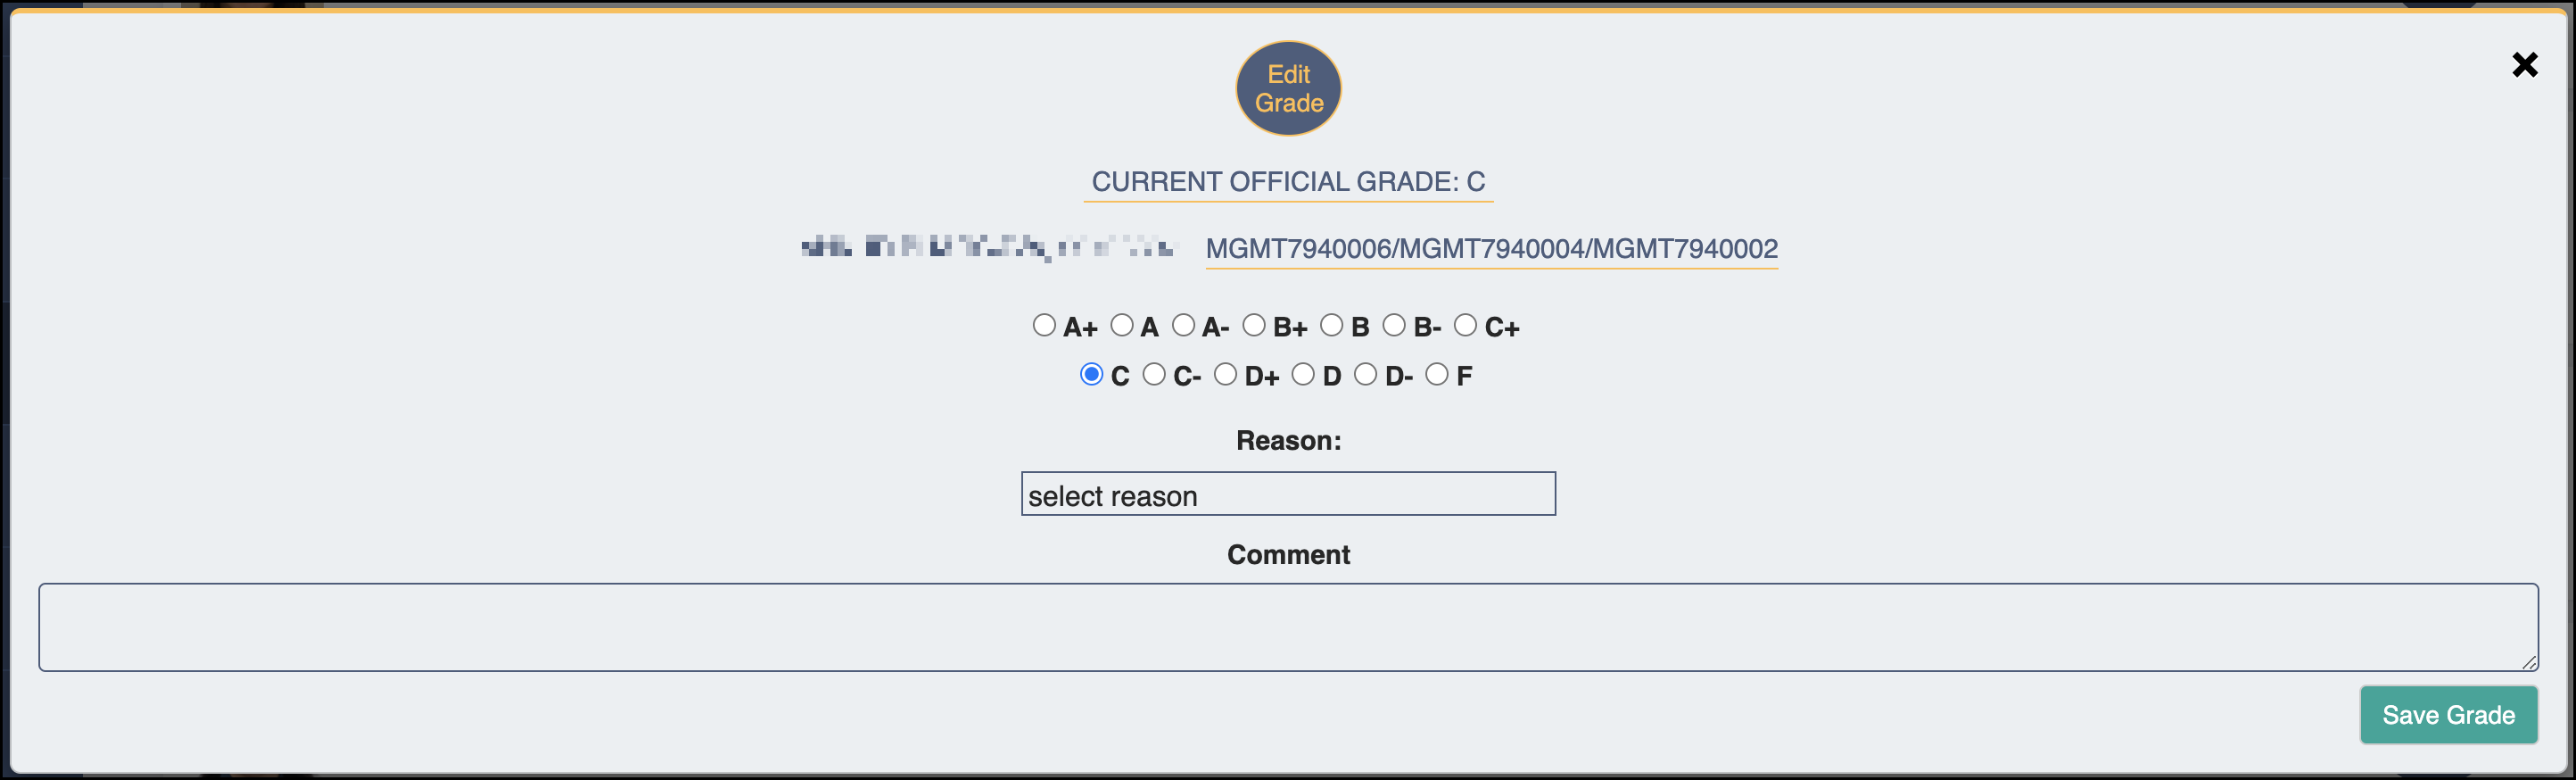 Grading - Edit Grades Interface